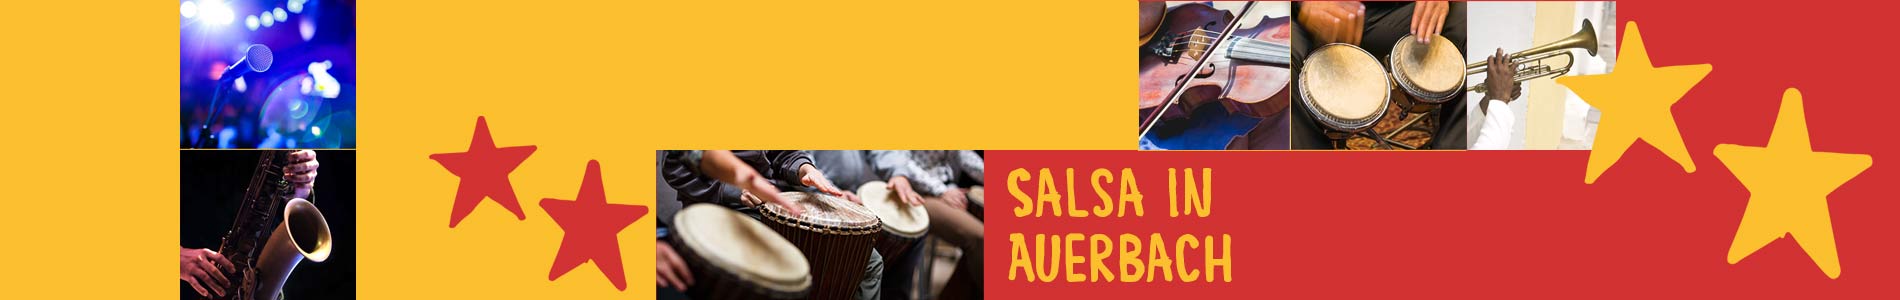 Salsa in Auerbach – Salsa lernen und tanzen, Tanzkurse, Partys, Veranstaltungen